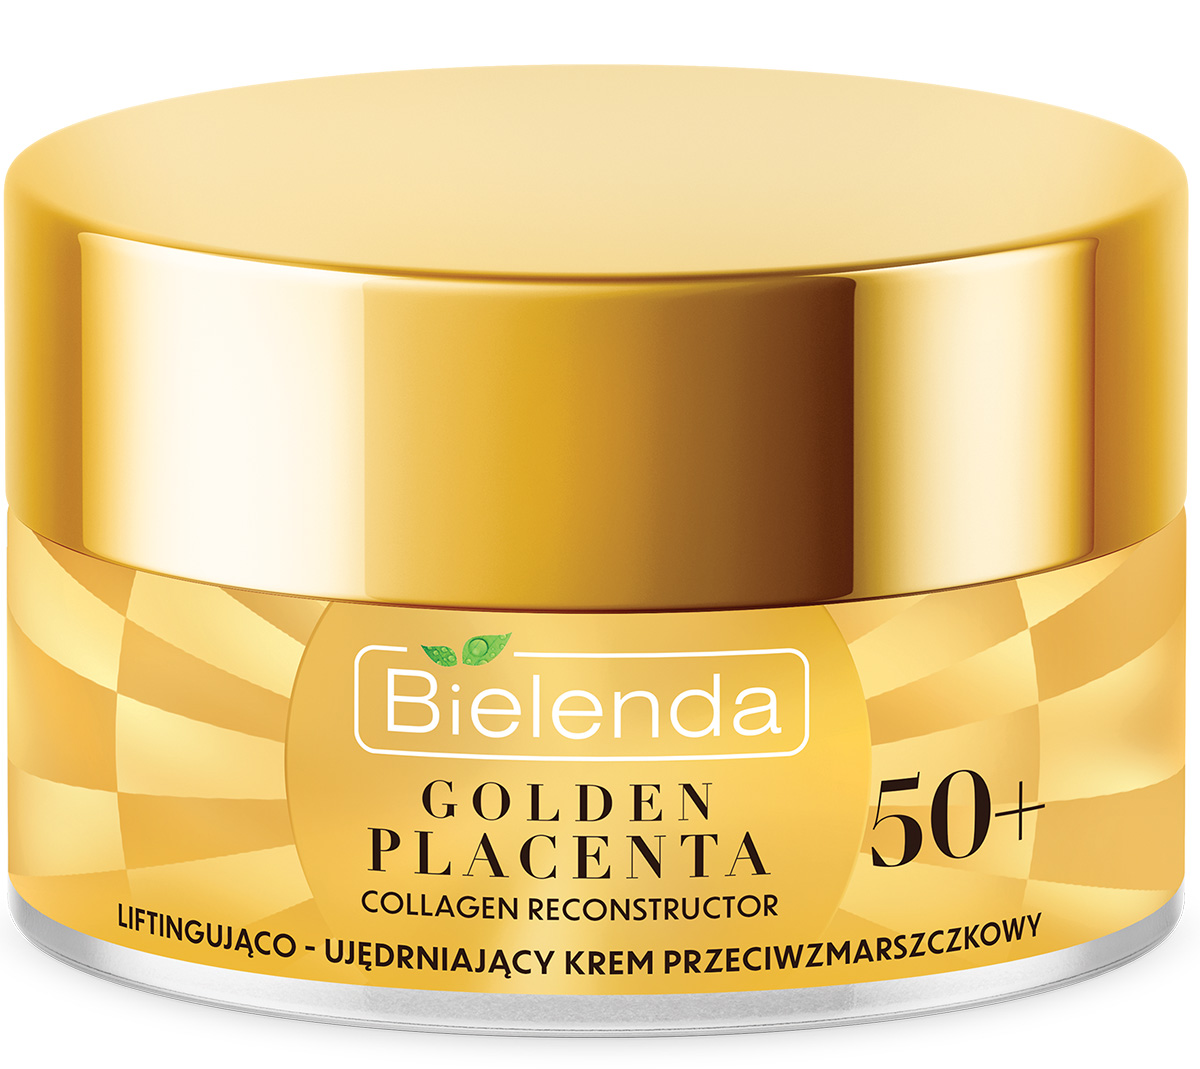 Bielenda GOLDEN PLACENTA Collagen Reconstructor Liftingująco ujędrniający krem 50 ml